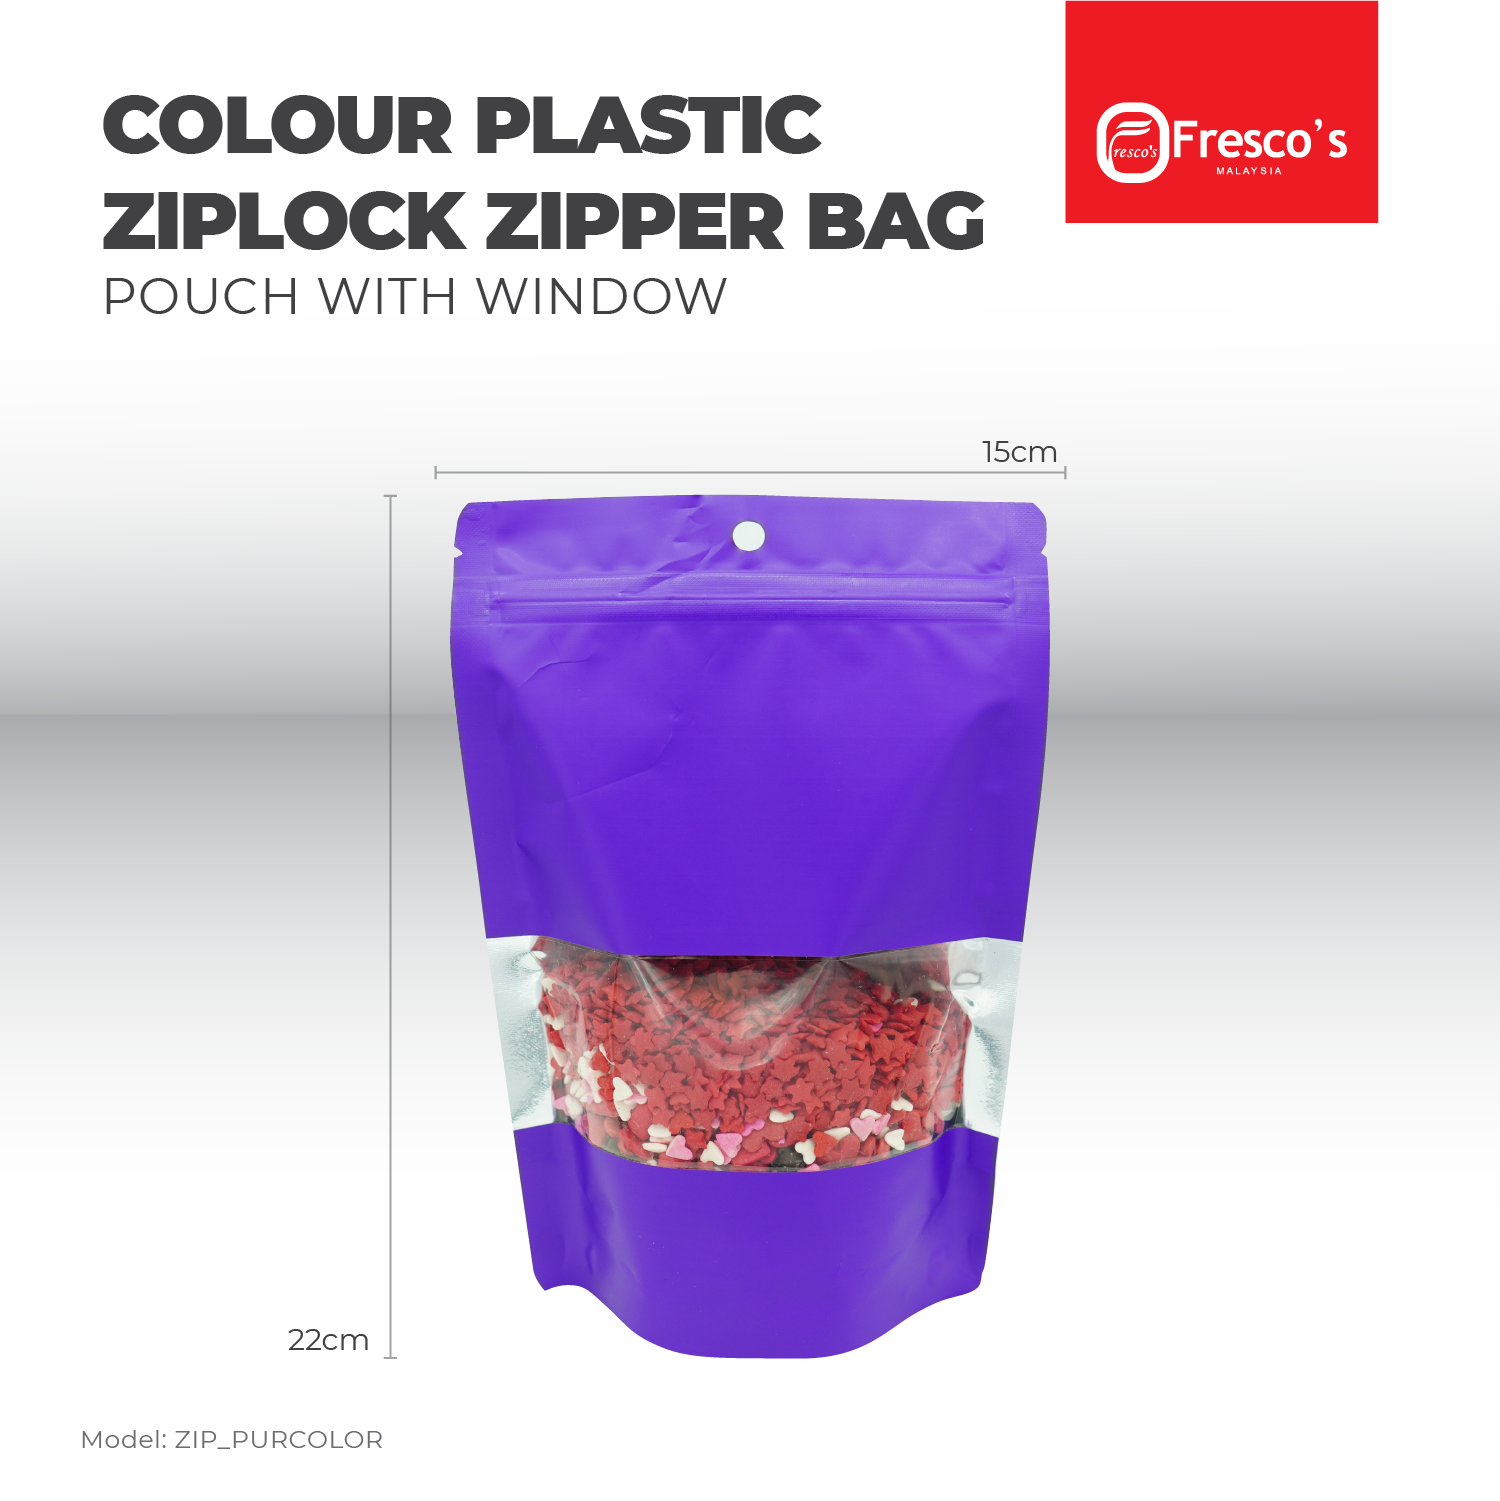 14x20 cm WHITE Stand Up Colour Plastic Ziplock Bag Goodies Bag 100PCS